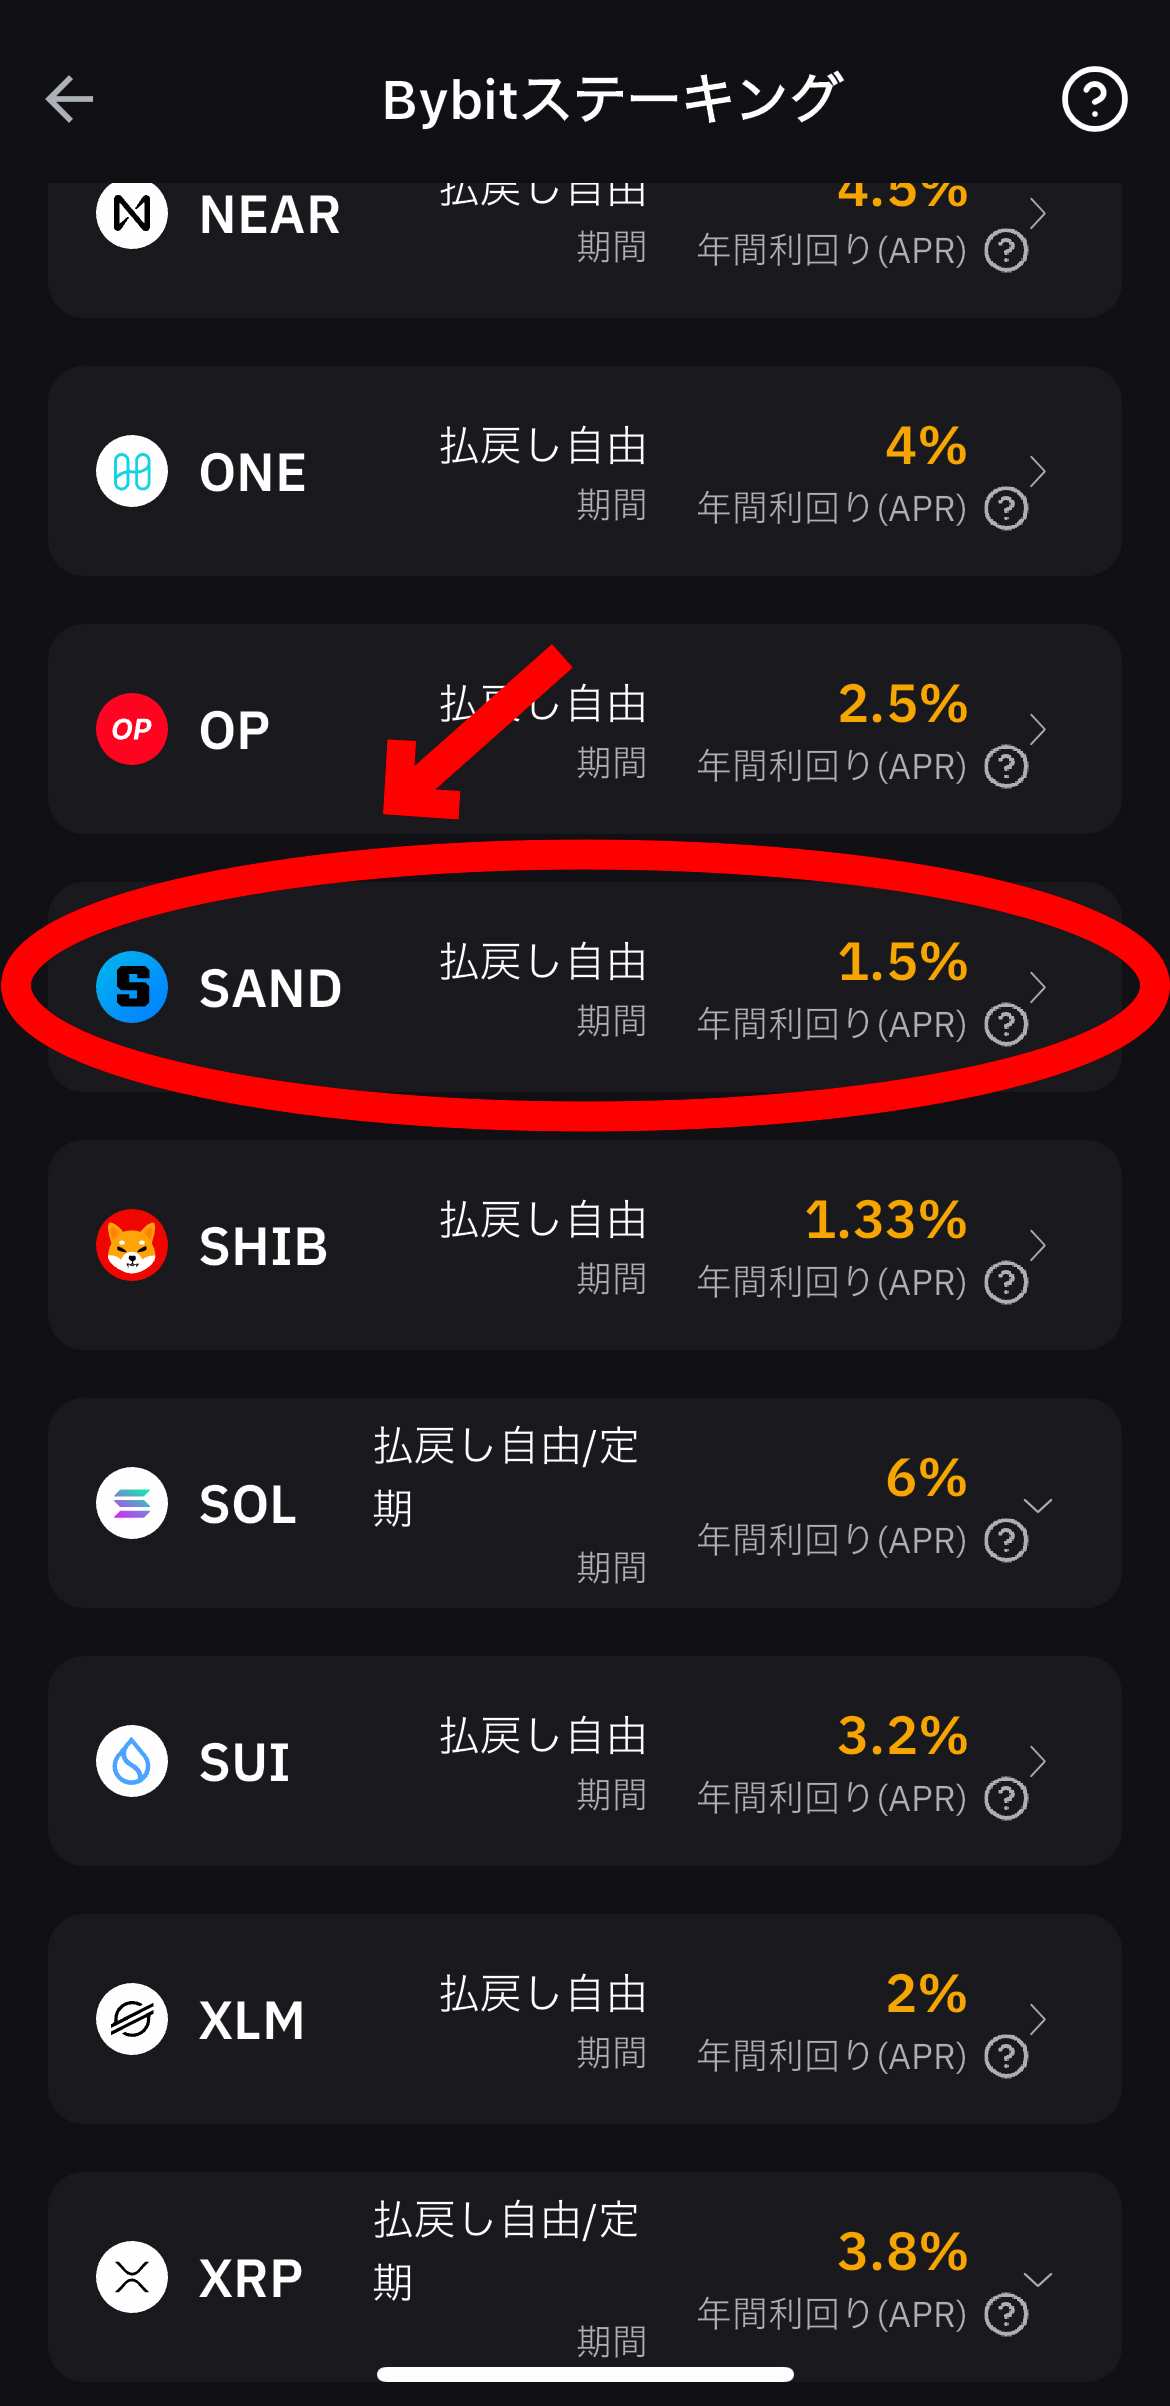 仮想通貨サンドボックスの買い方、ステーキング方法【SAND】【The Sandbox】【Bybit】【バイビット】SANDを選択します